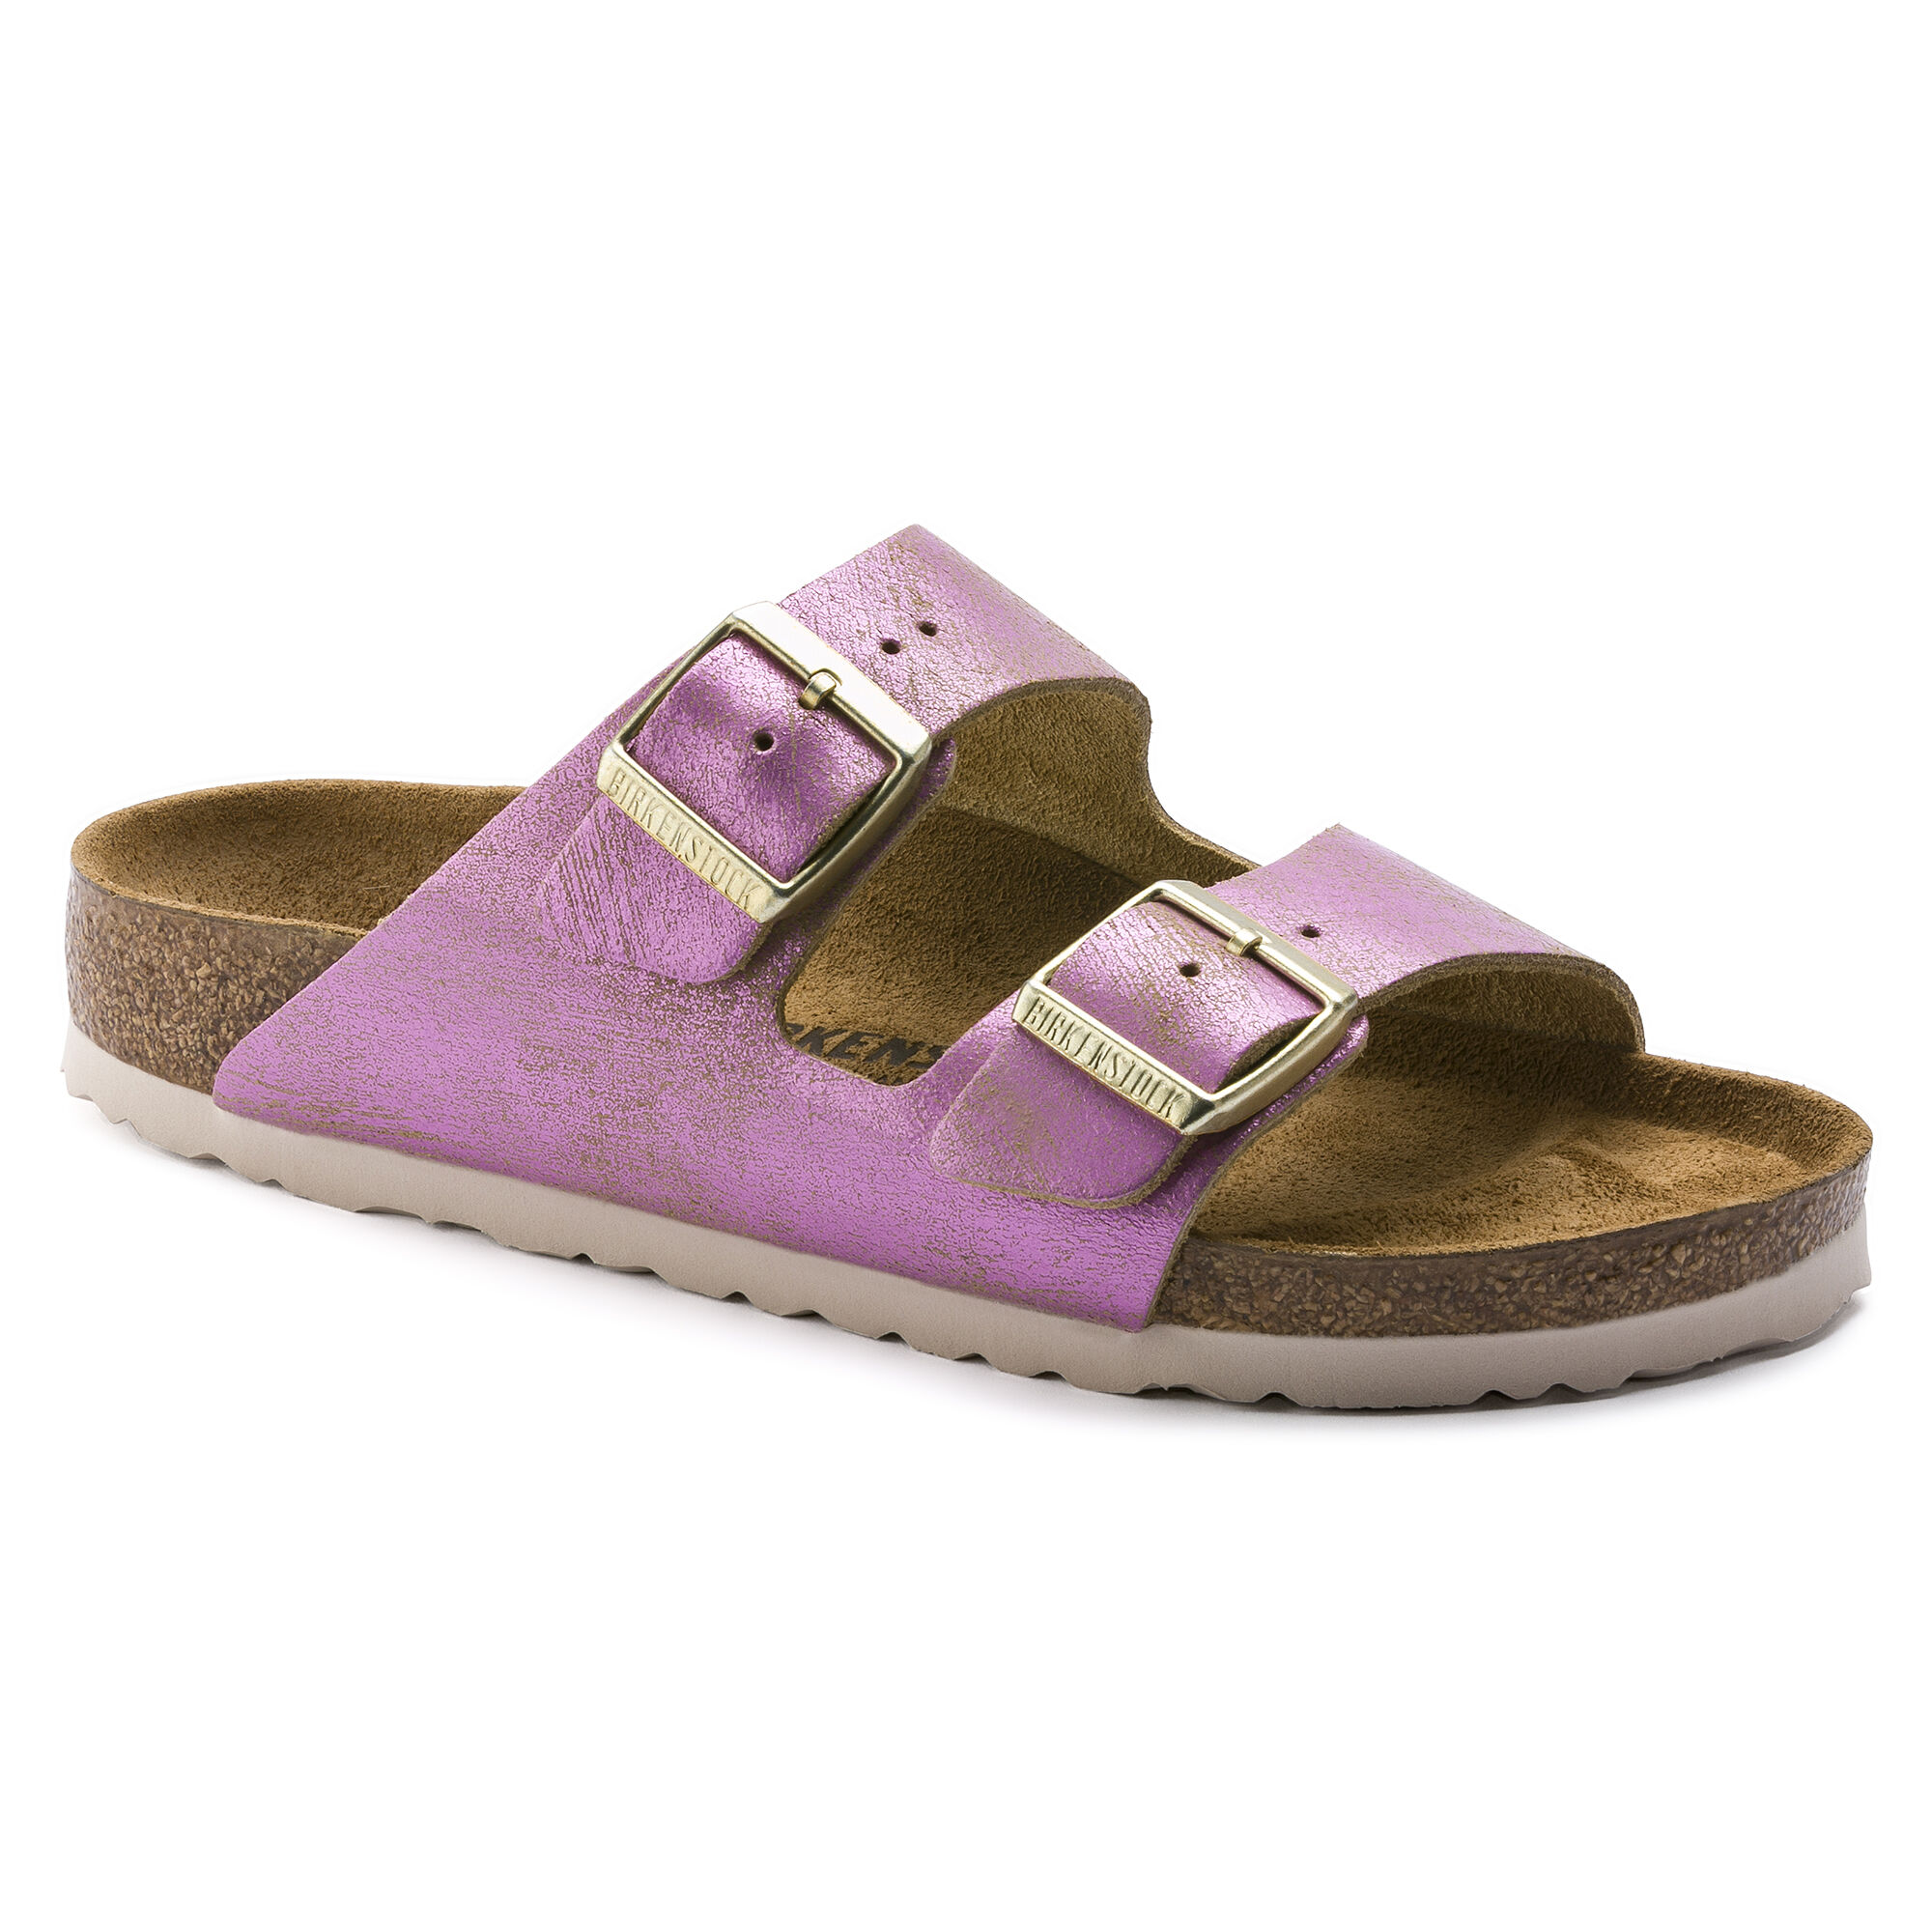 birkenstock suede arizona sandals pink